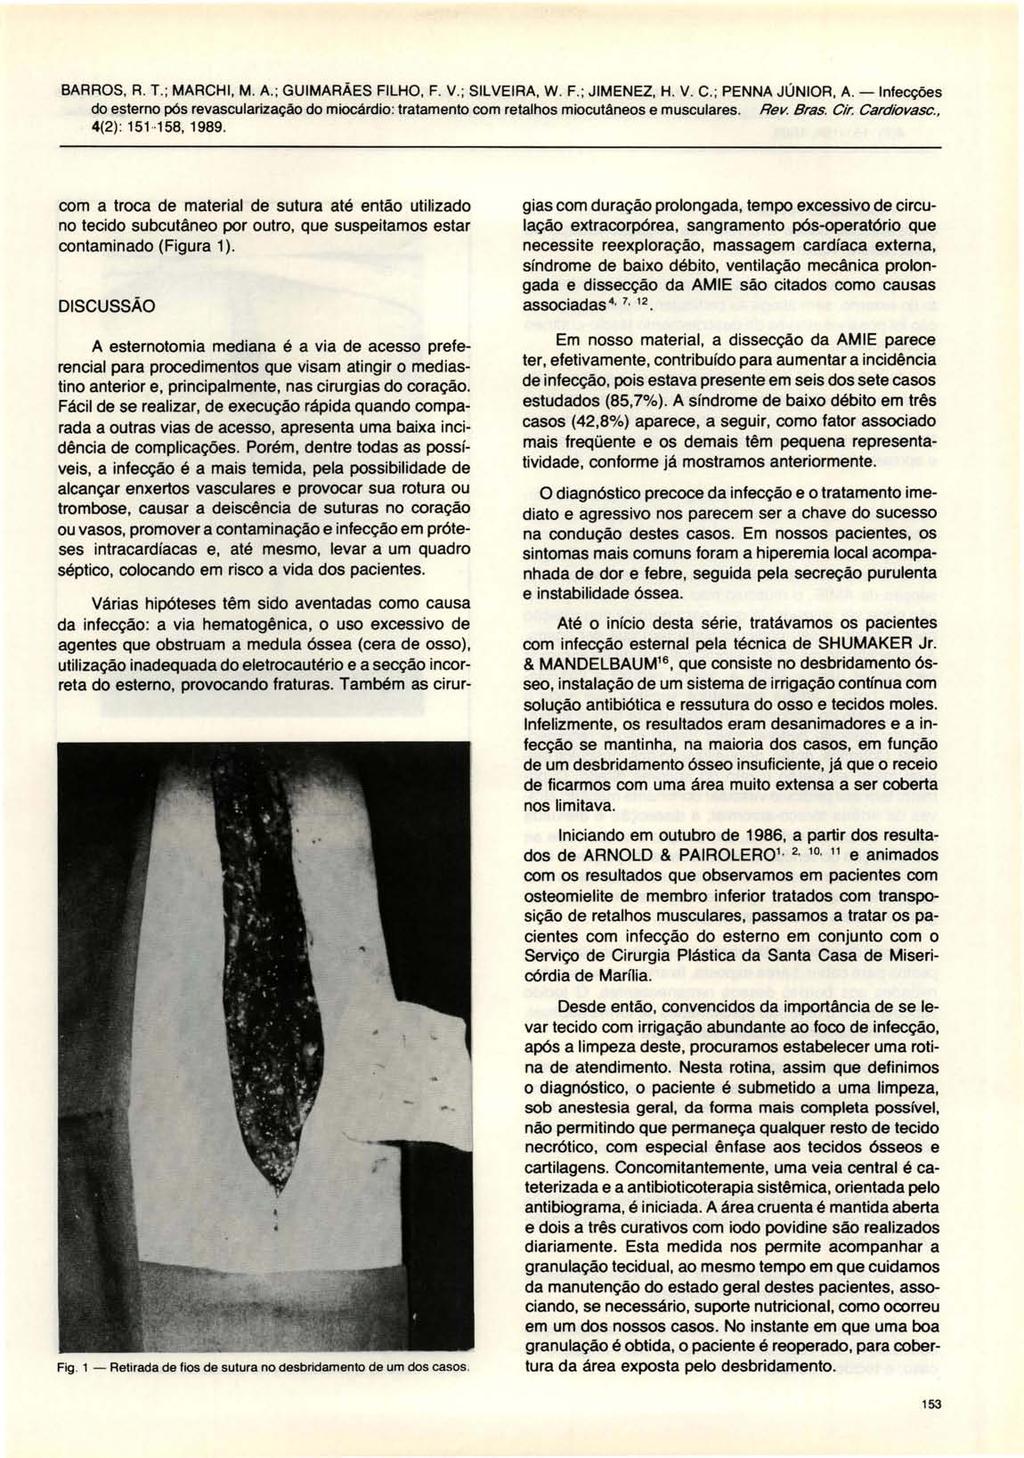 BARROS, R. T. ; MARCHI, M. A.; GUIMARÃES FILHO, F. V.; SILVEIRA, W. F. ; JIMENEZ, H. V. C. ; PENNA JÚNIOR, A. -Infecções 4(2) : 151-158, 1989.